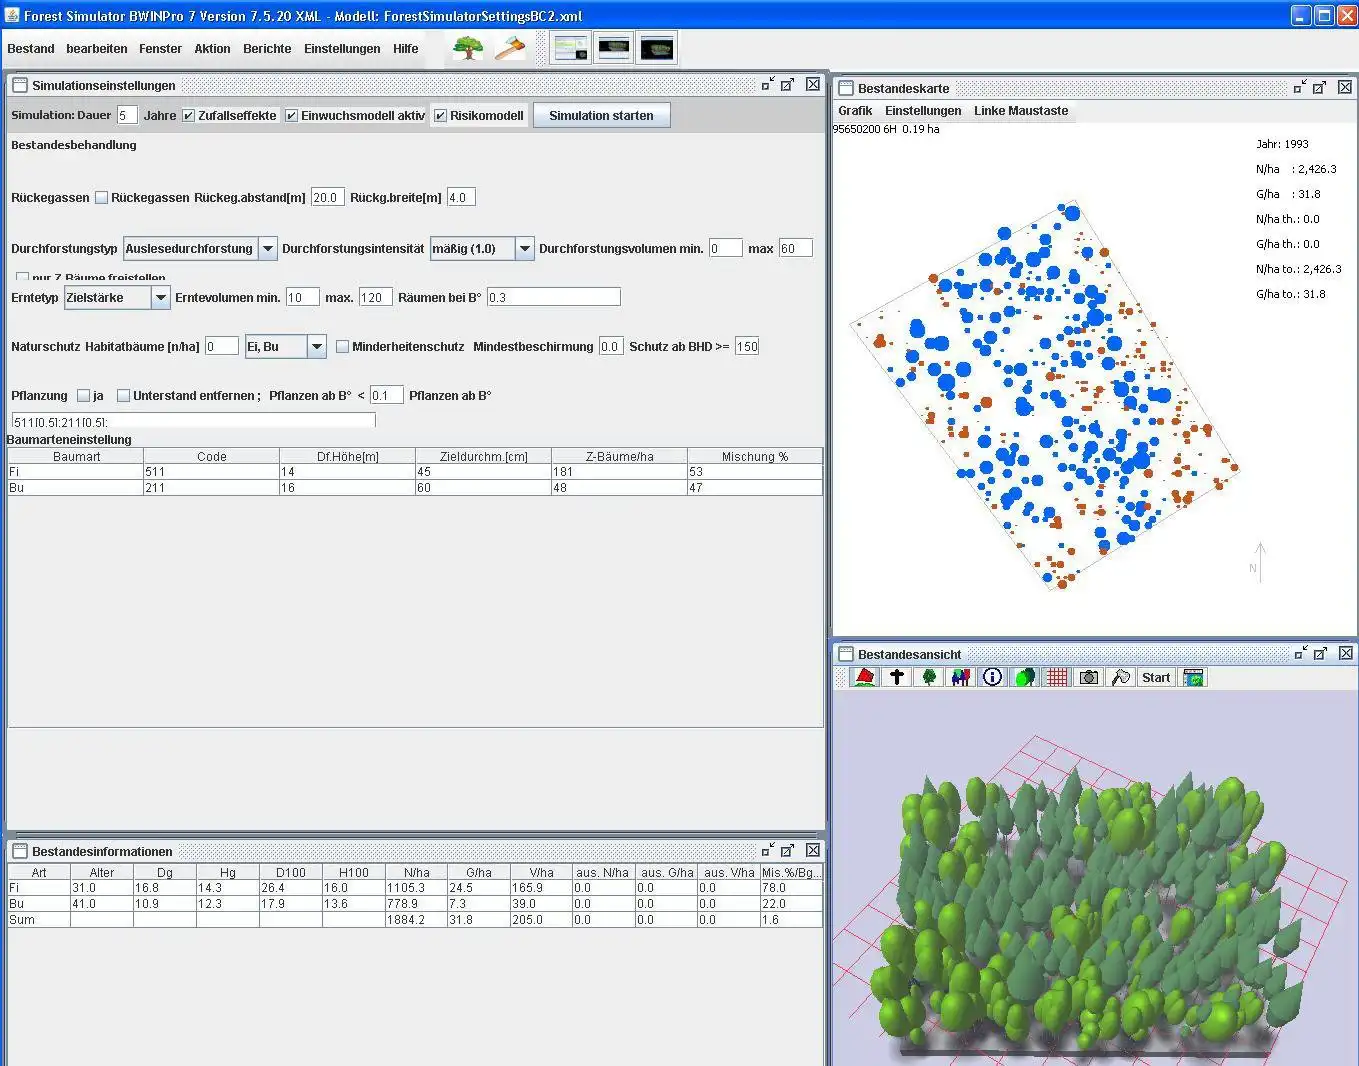 הורד את כלי האינטרנט או אפליקציית האינטרנט TreeGrOSS Forest Growth Simulation להפעלה בלינוקס באופן מקוון